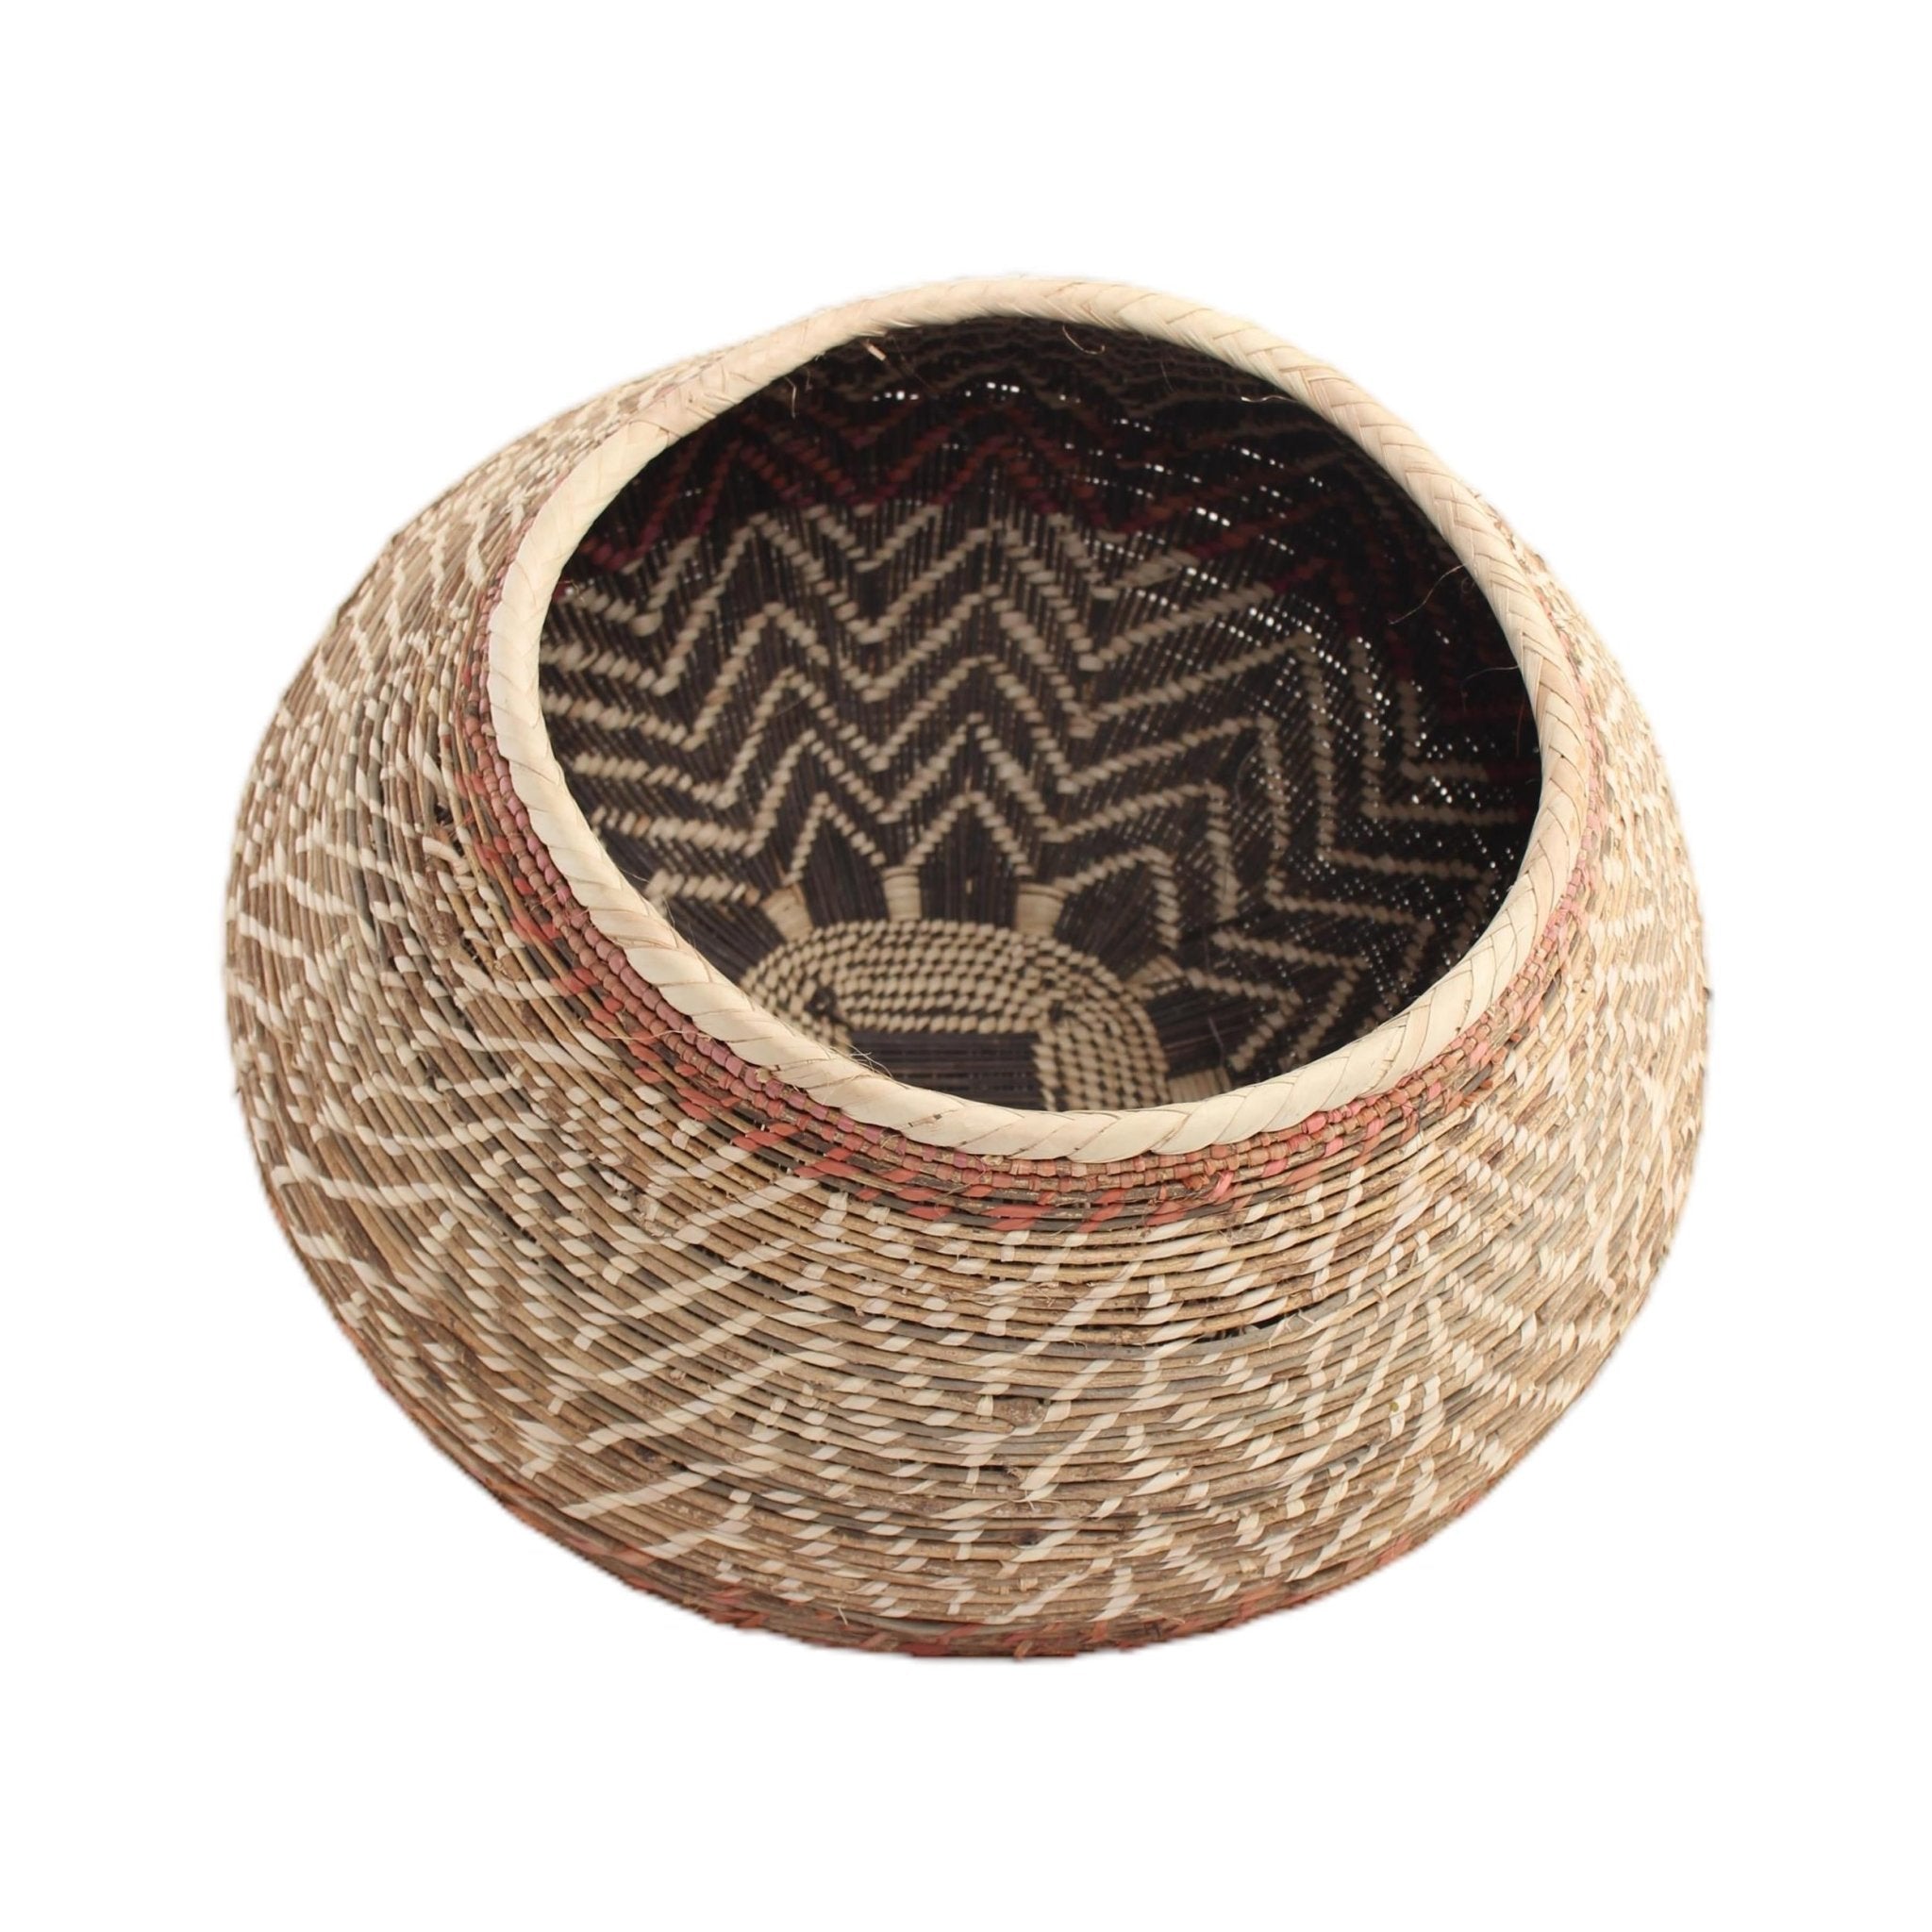 African Baskets - African Angel Art